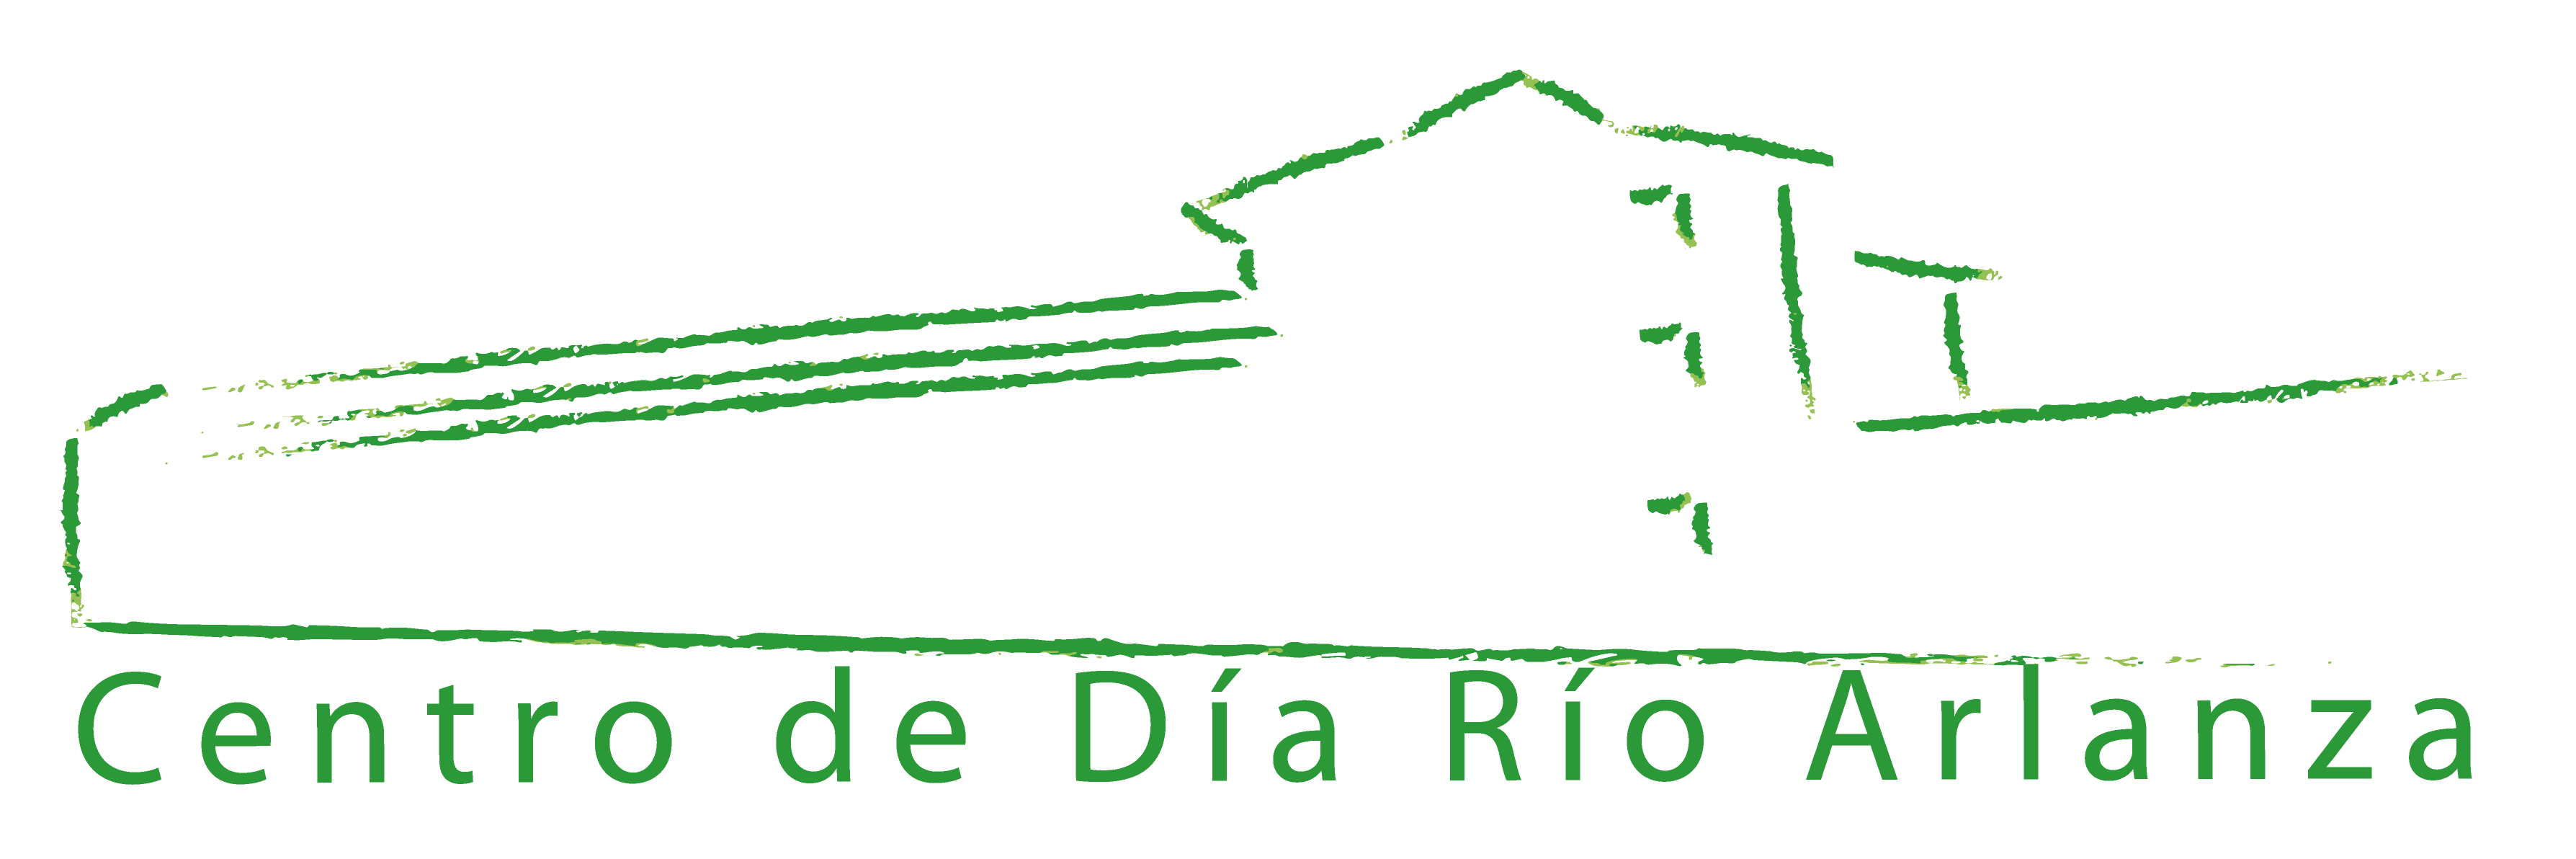 Logotipo Centro de Día Río Arlanza vinculo a indice